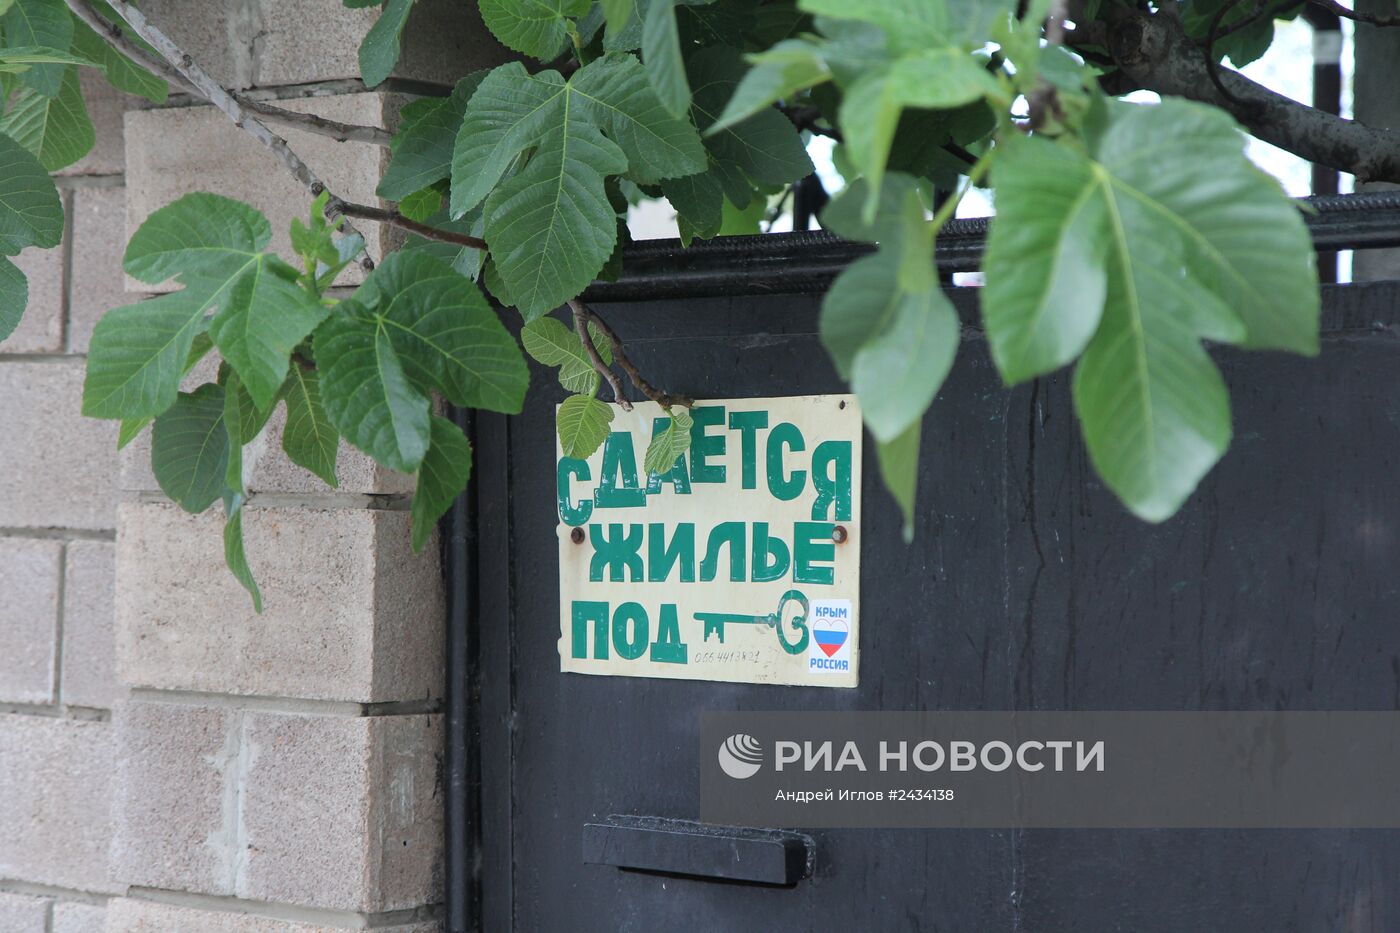 Объявления о сдаче жилья в поселках на южном берегу Крыма